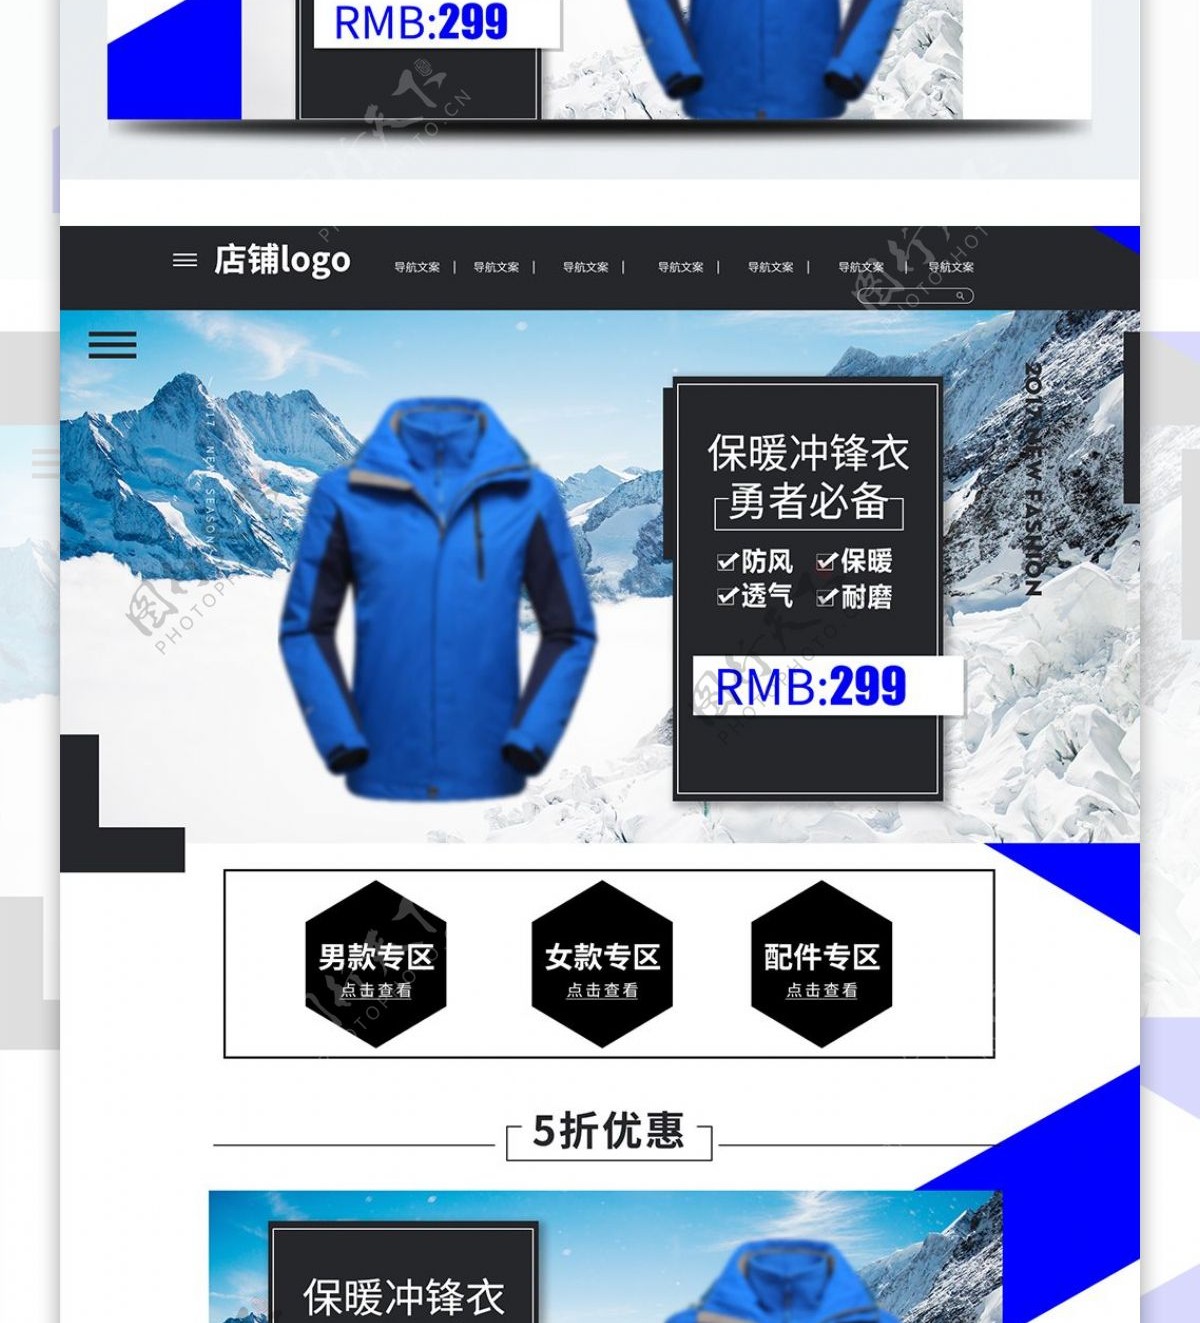 蓝黑色炫酷时尚冬季上新大促销潮流PC首页